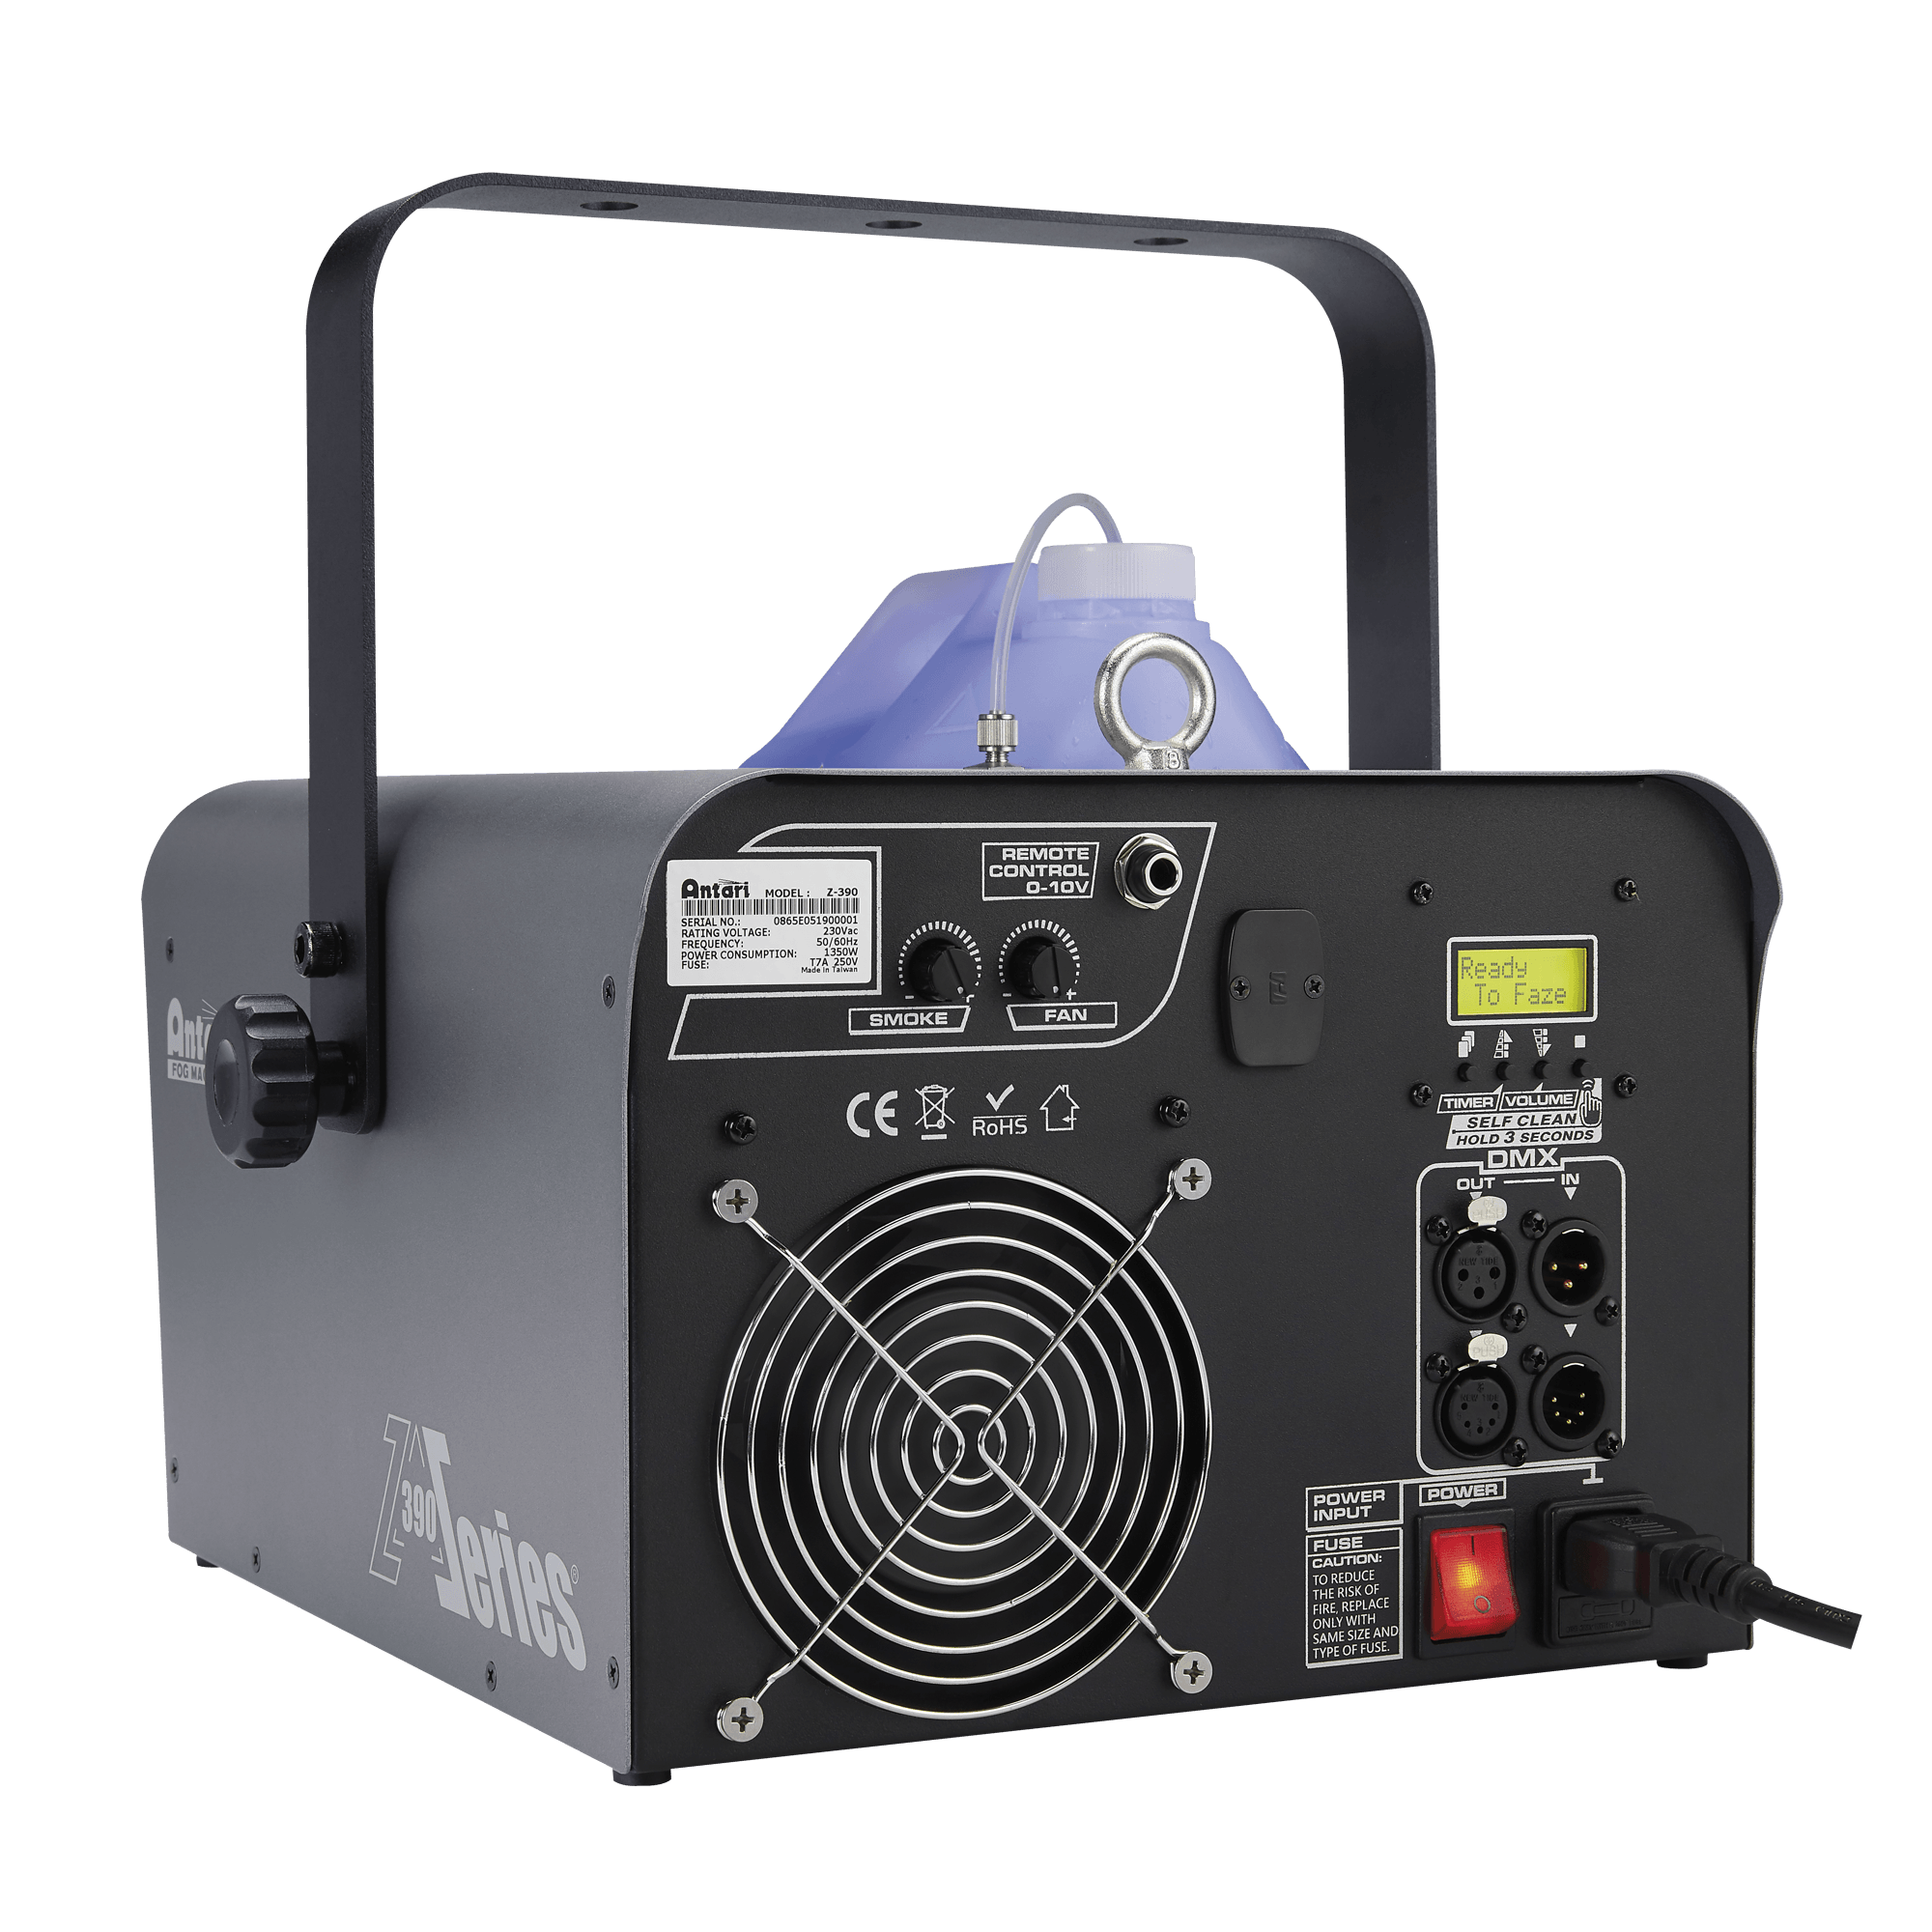 Antari Z-390 Fazer 1500 W Fazer - DY Pro Audio